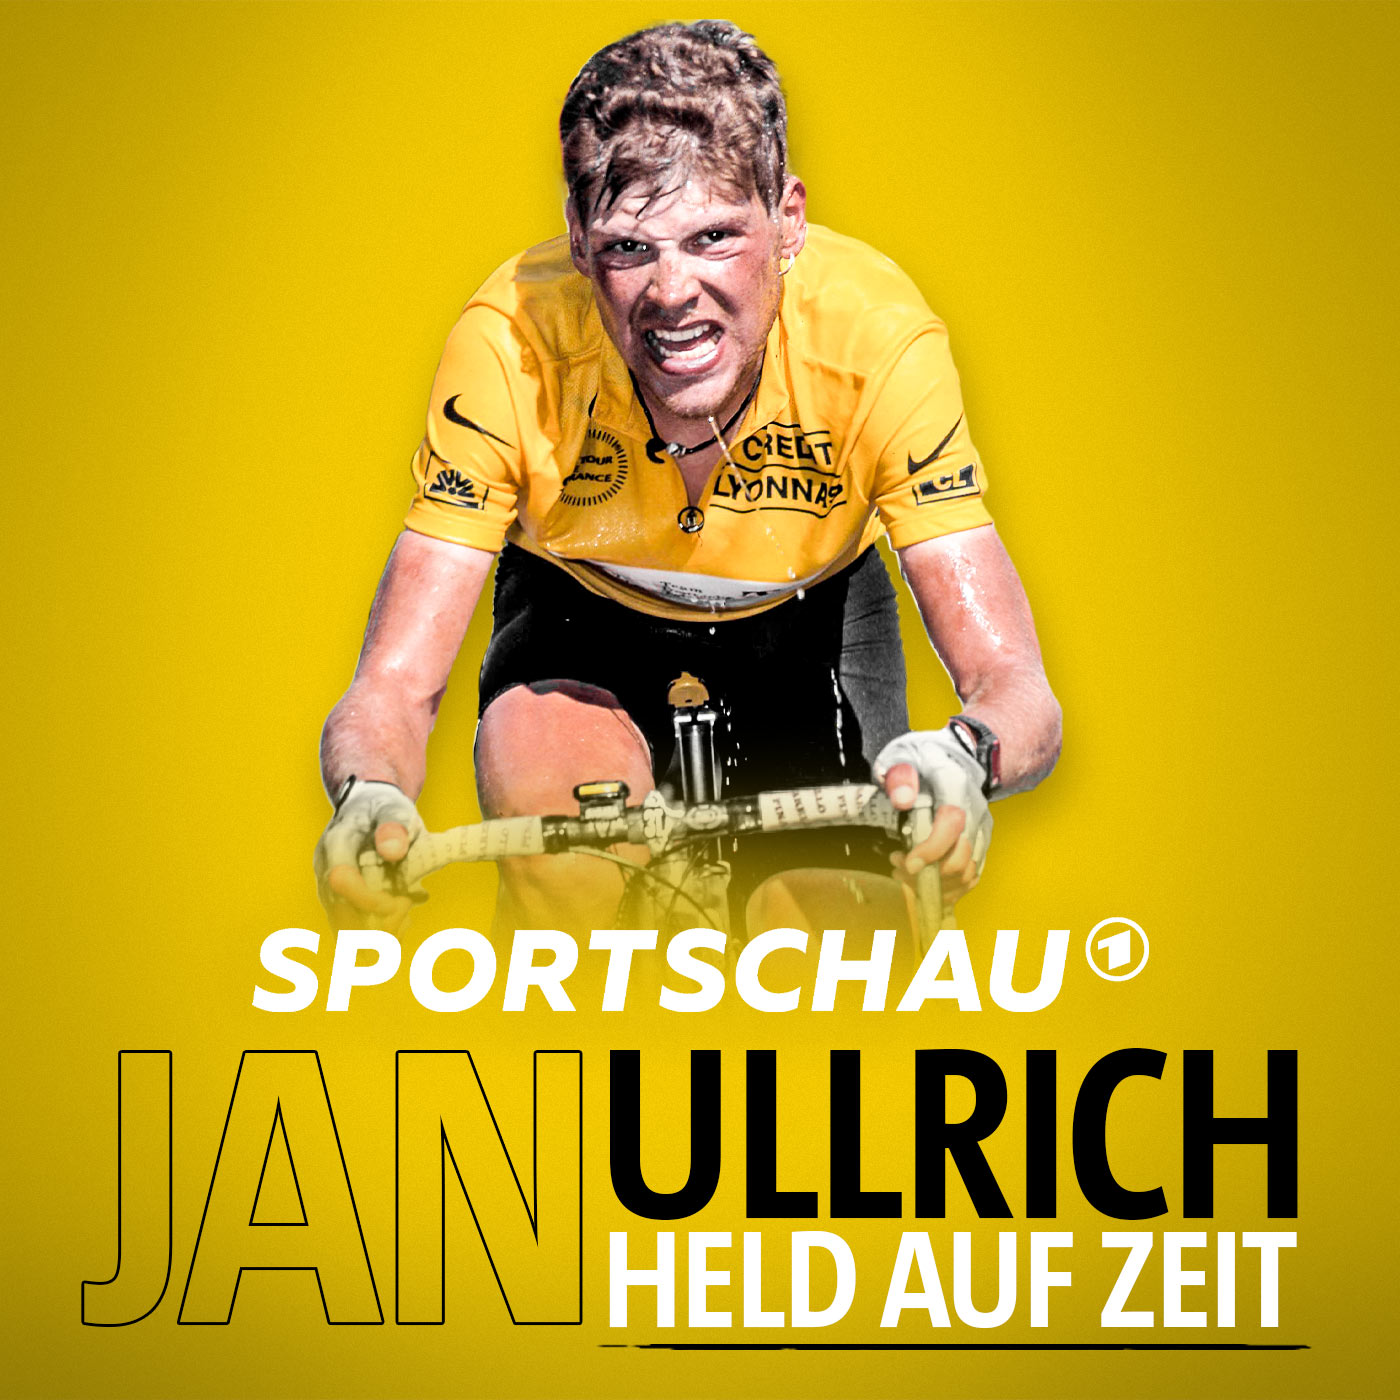 Jan Ullrich - Held auf Zeit